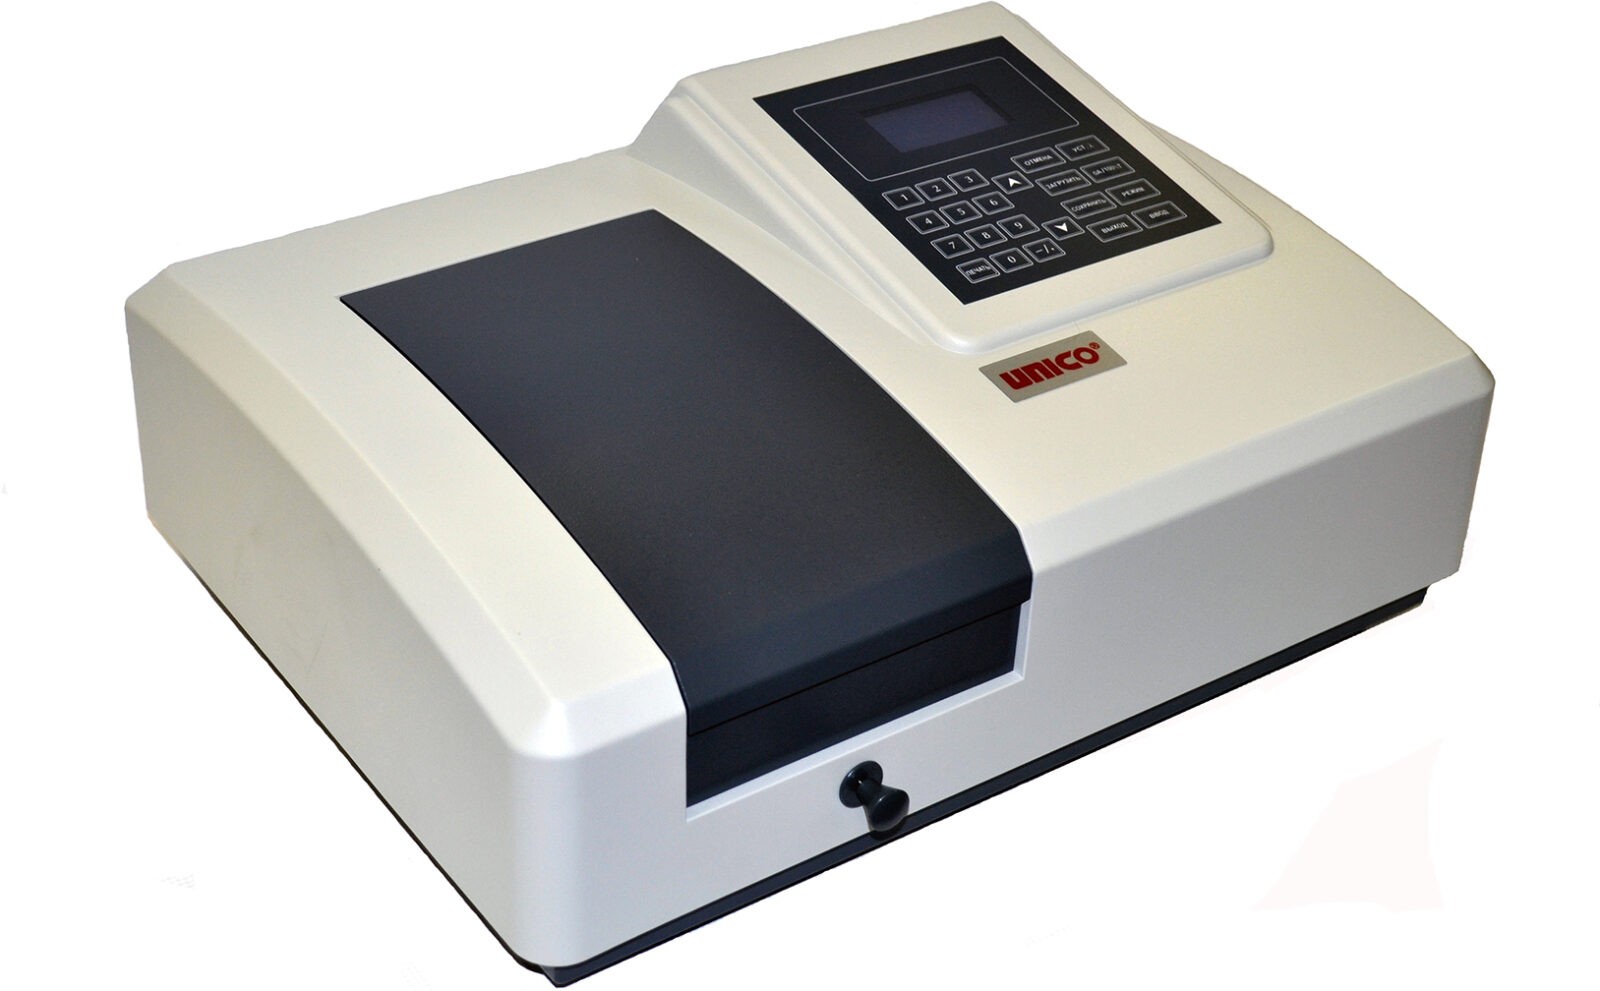 Обеспечение программное спектрофотометров серий S2100+ и S2100UV+ S-2100P-401 Спектрометры